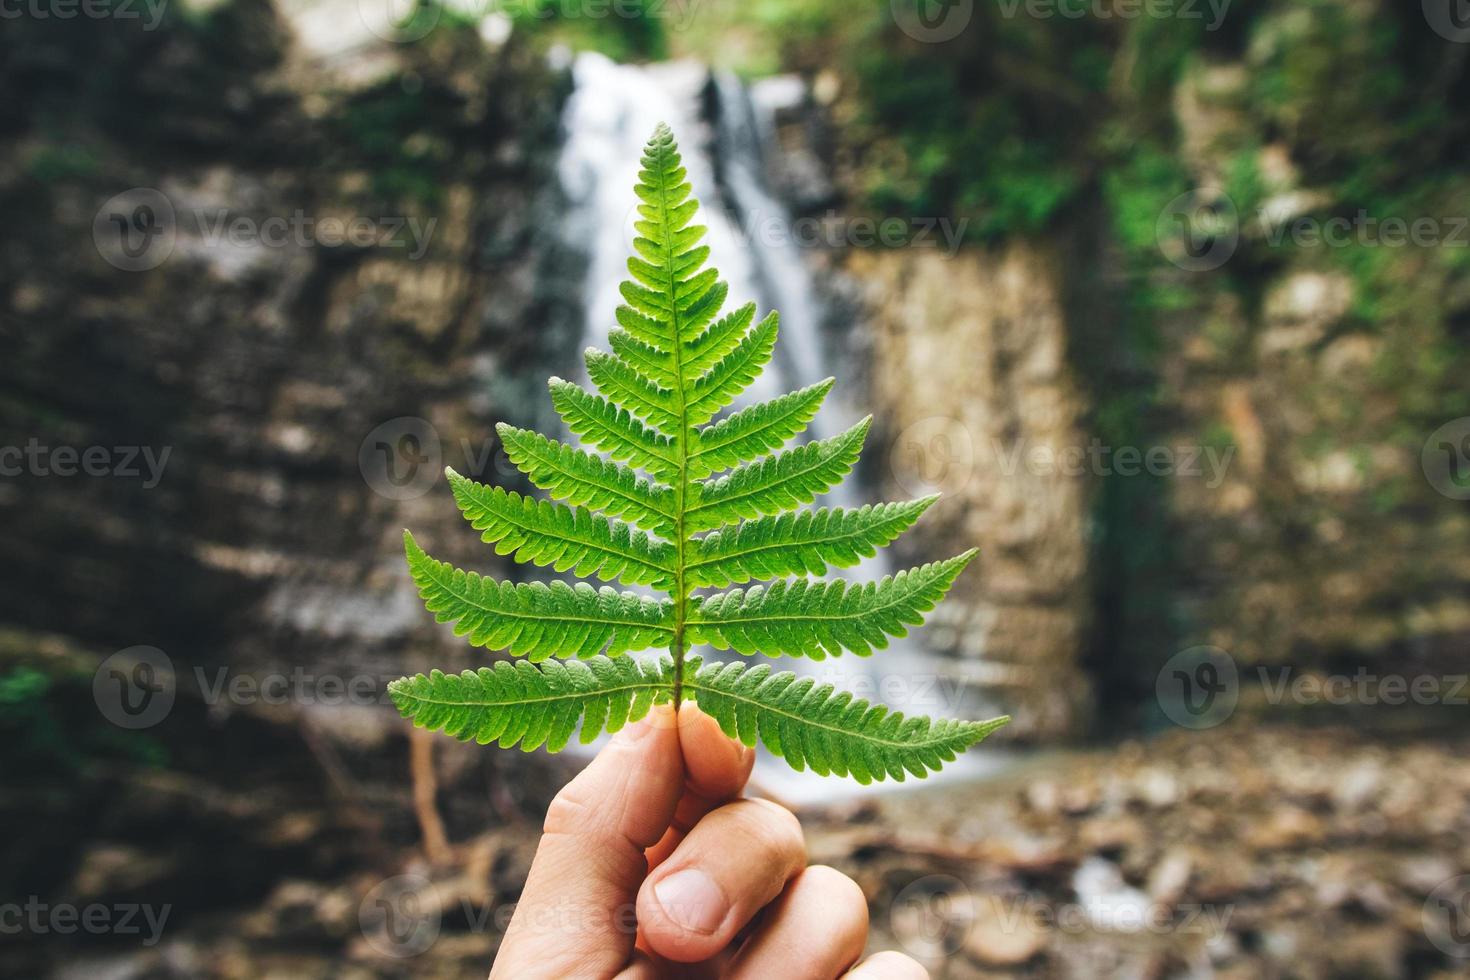 grönt blad av ormbunkar i handen på bakgrund av stenar och vattenfall foto